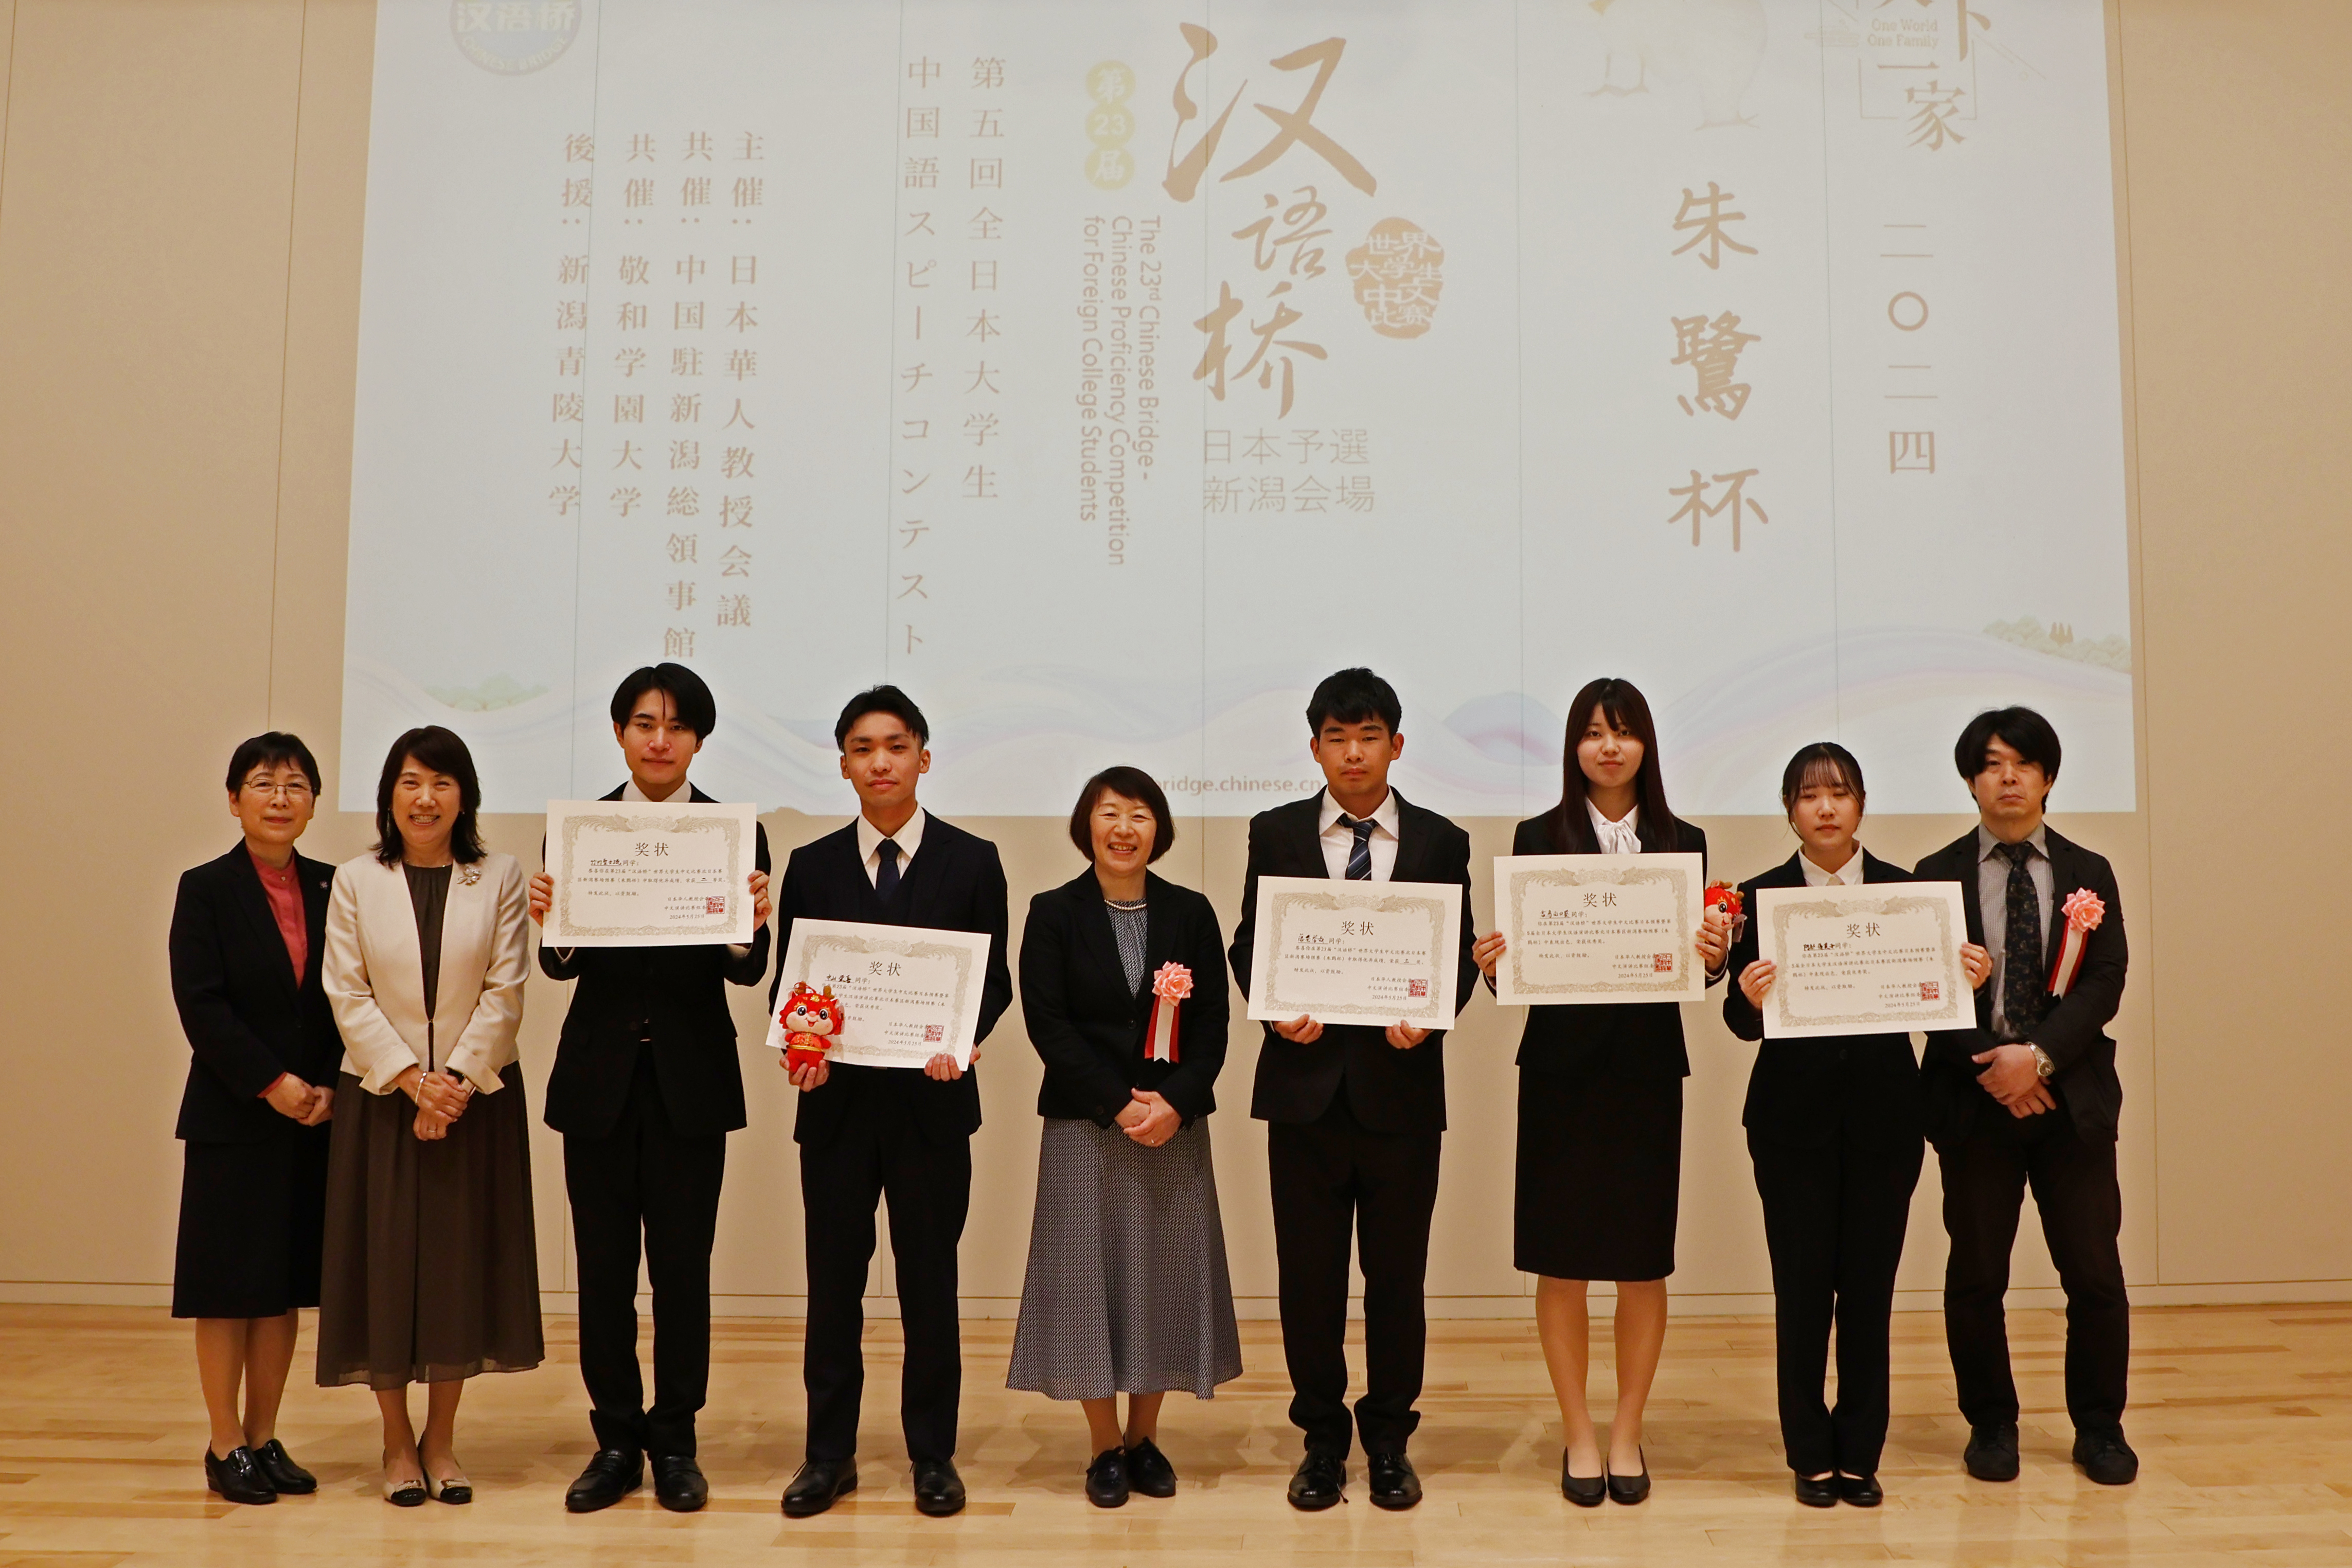 発表を行った敬和学園大学の学生たちと指導してくれた先生たち